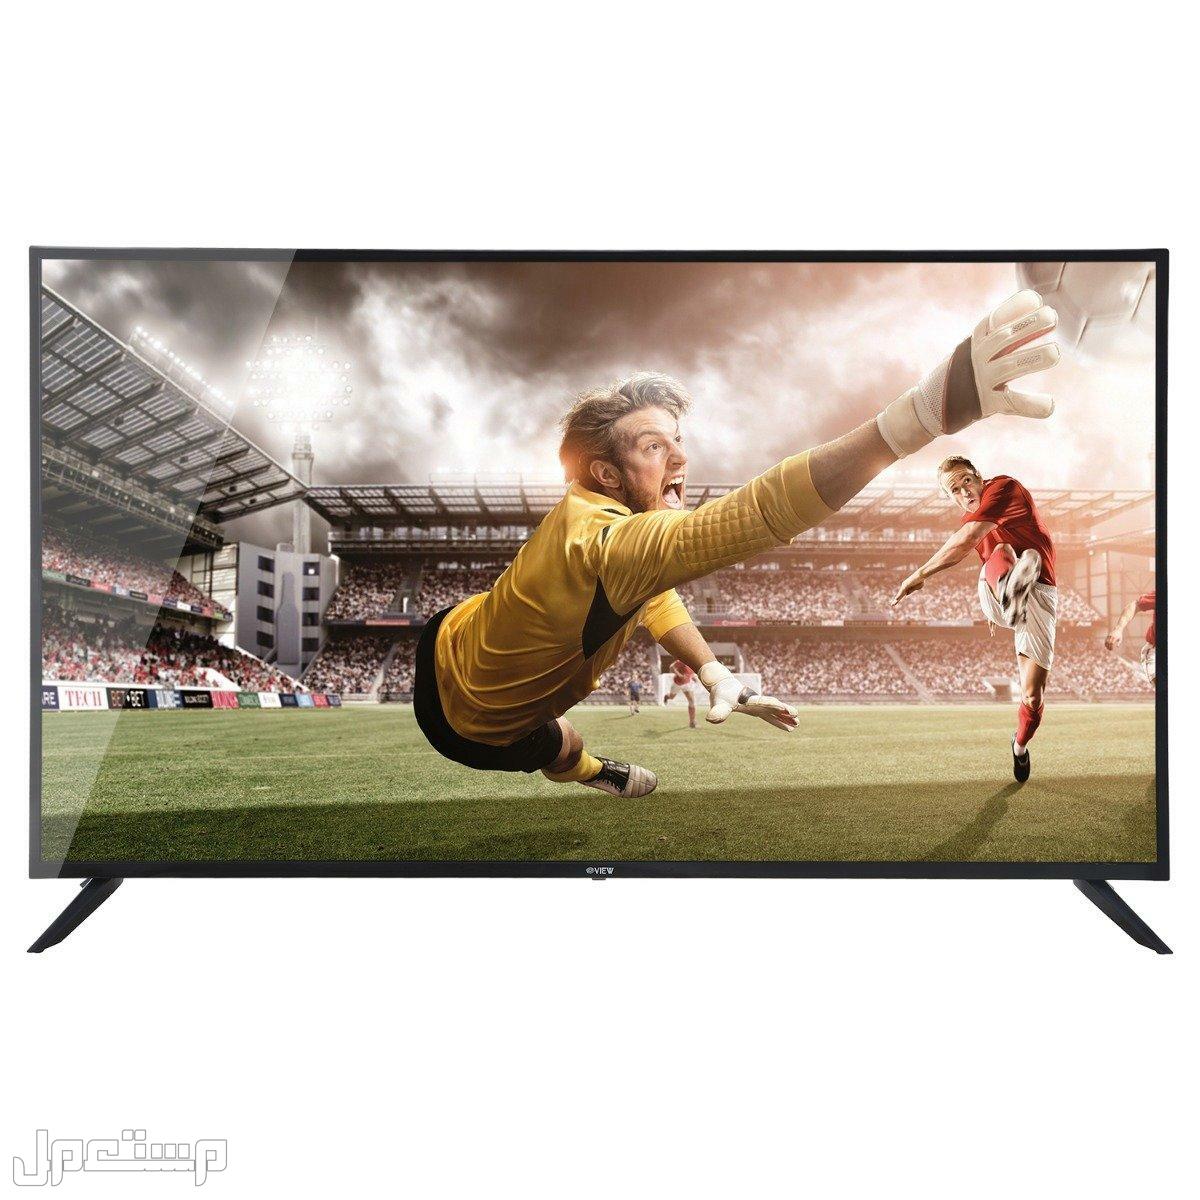 أرخص شاشات تلفزيون يمكنك شرائها (دليلك الكامل) في الجزائر ارخص شاشات تلفزيون